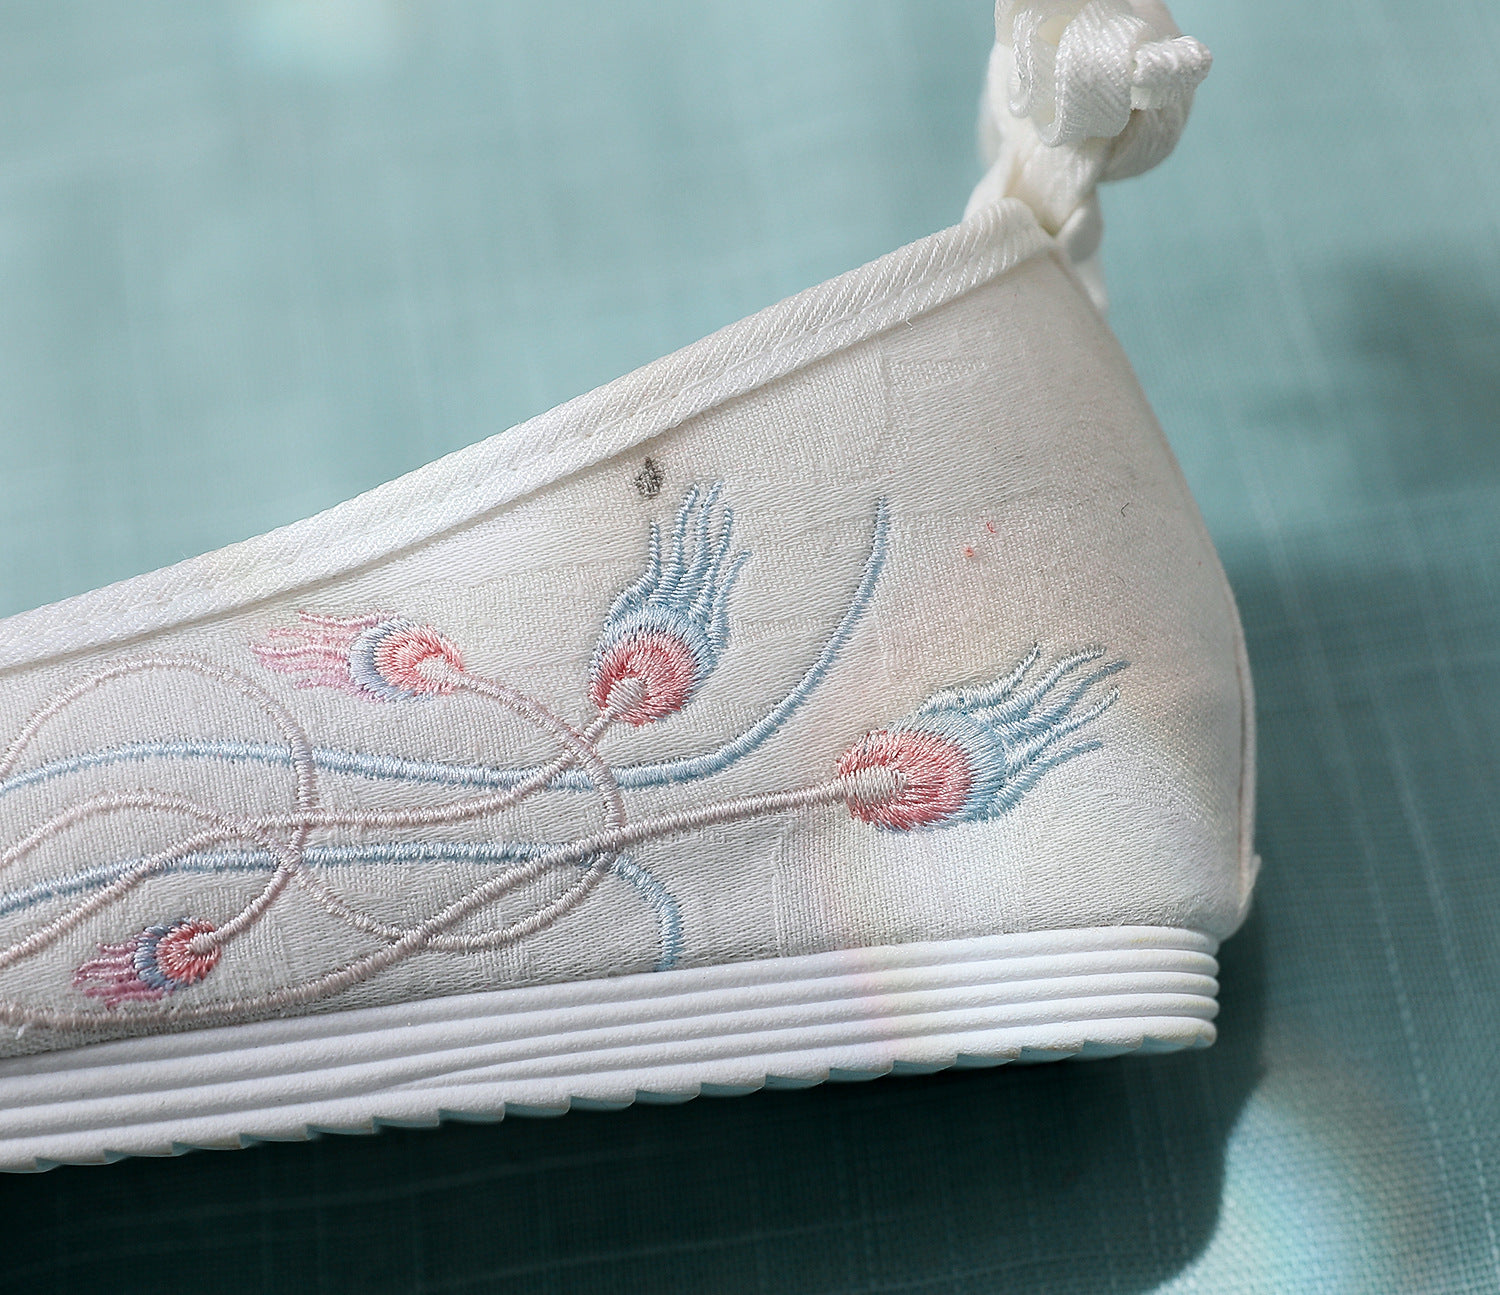 Plantilla de 3cm lazo antiguo con cordones hasta los dedos del pie-arriba-zapatos de lona bordados